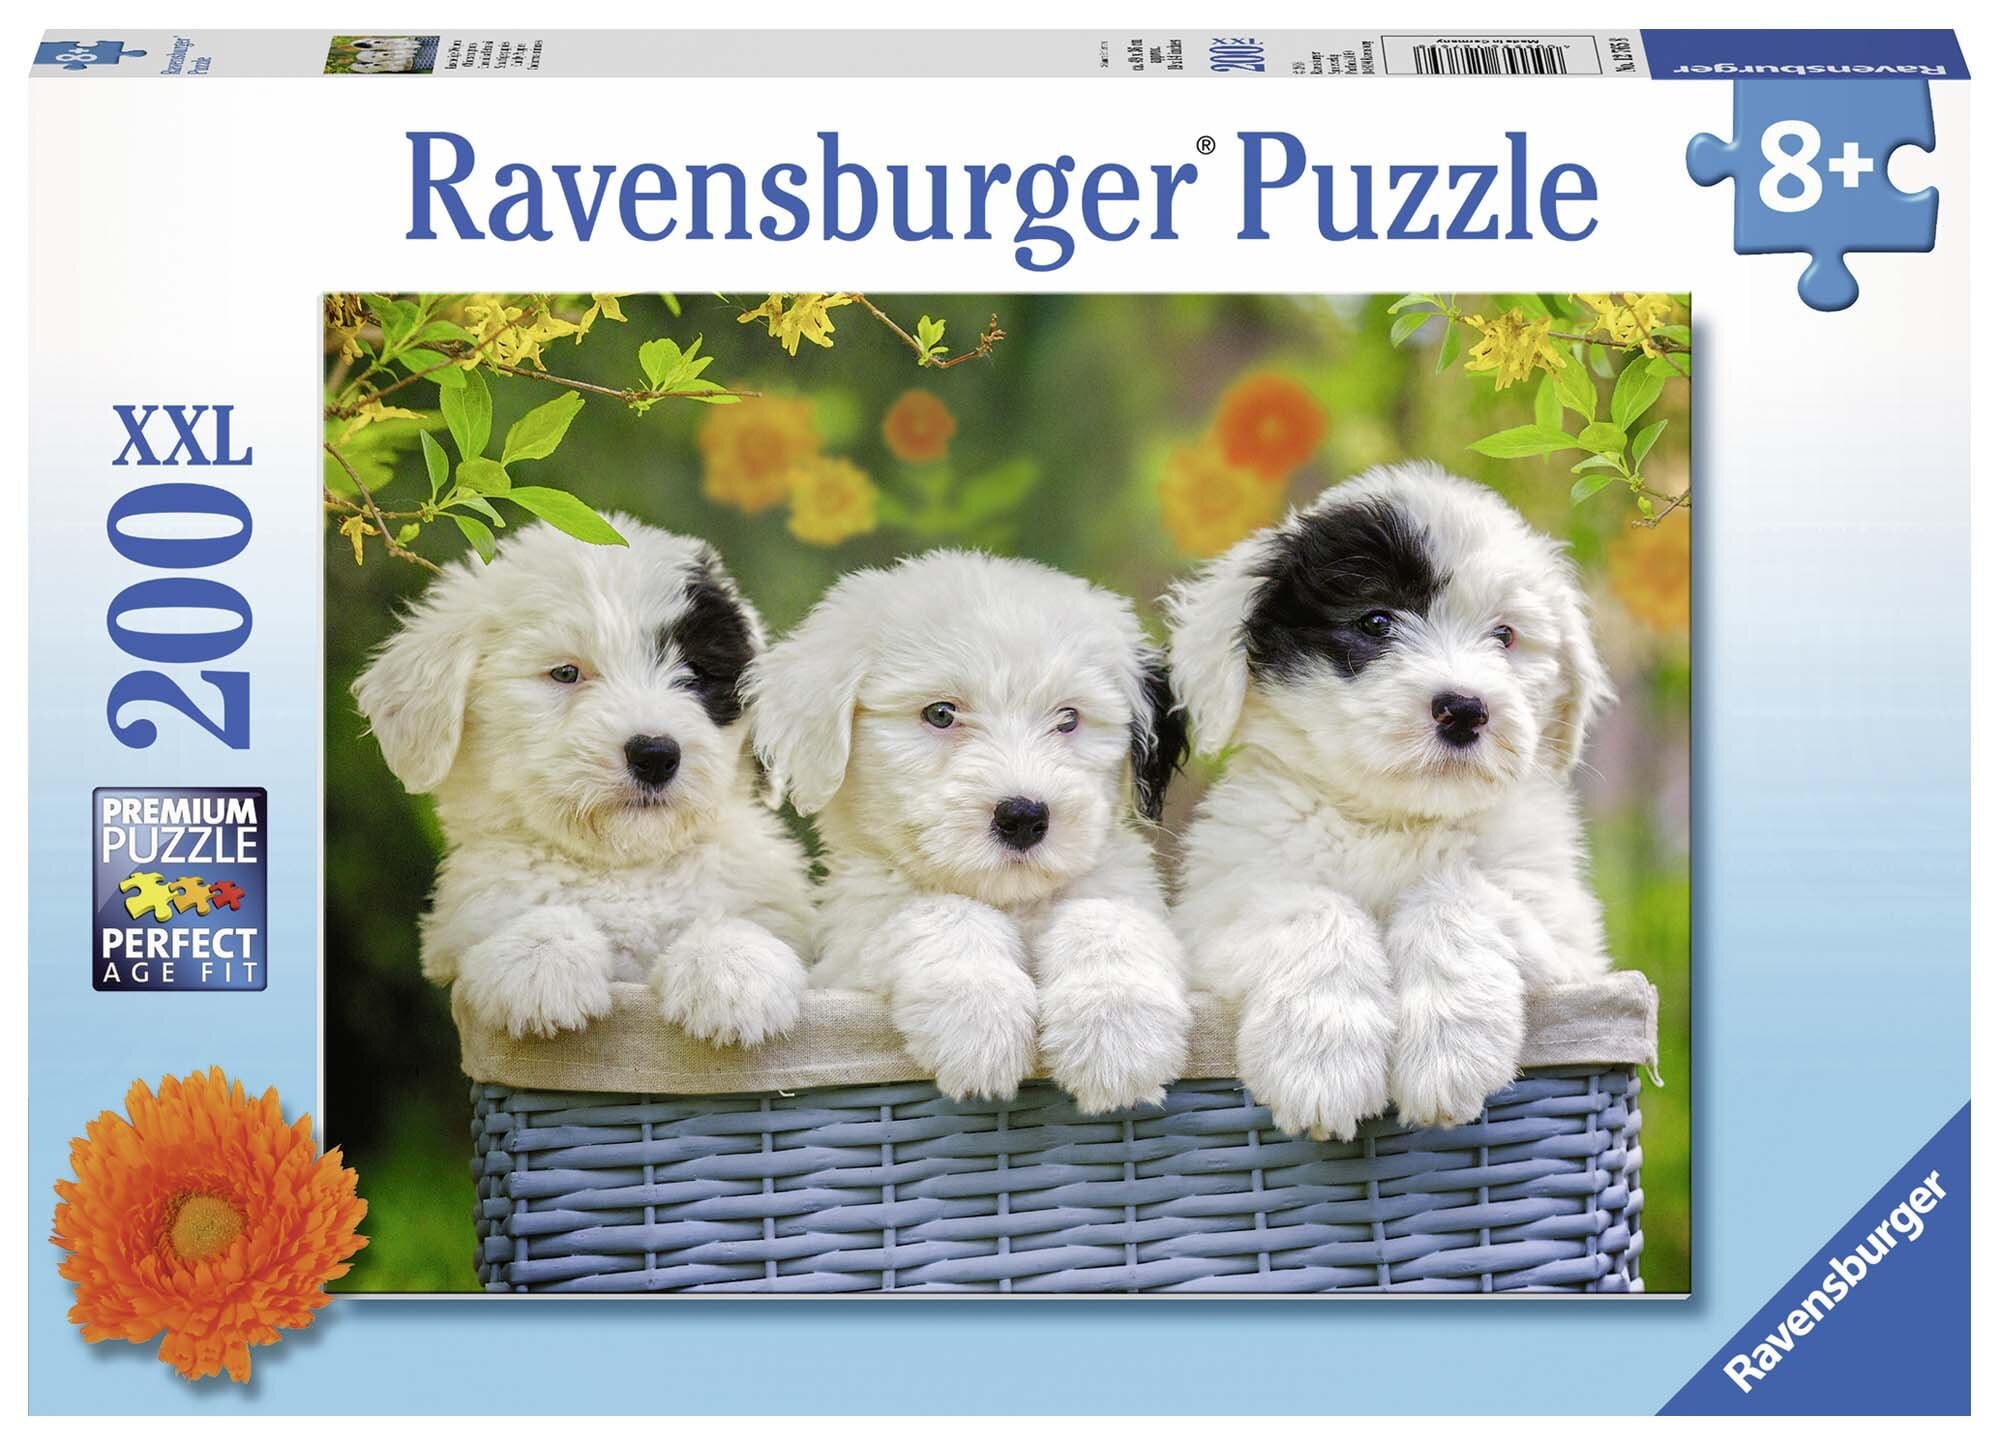 Ravensburger Puslespill, Cuddly Puppies 200 brikker XXL